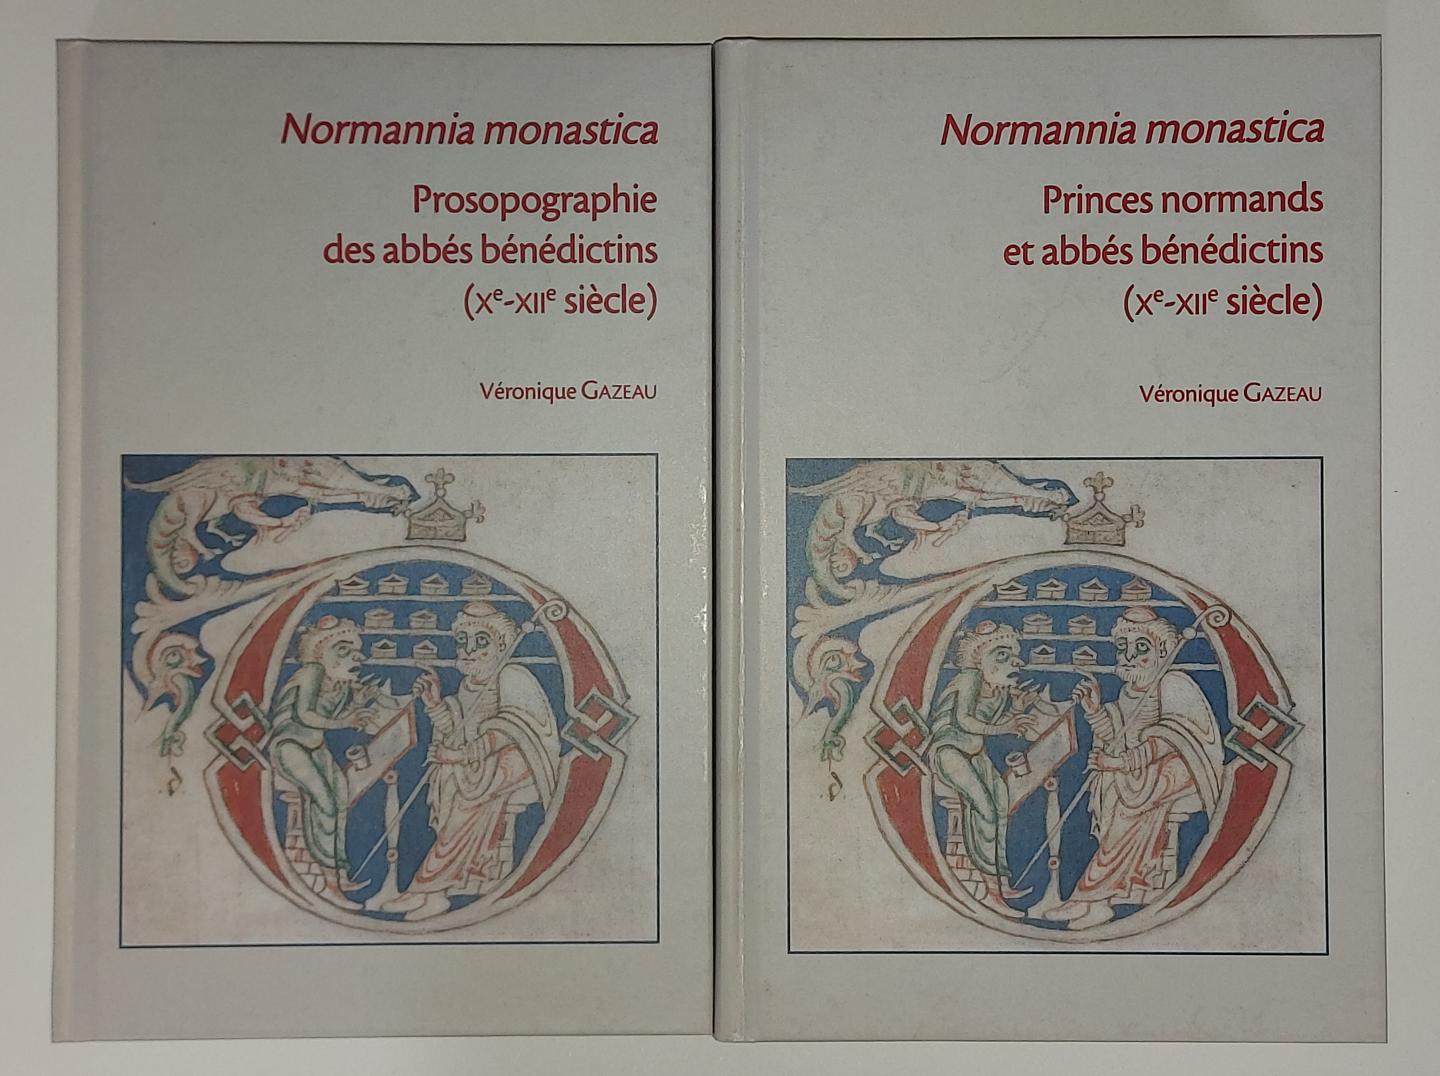 Gazeau, Veronique - Normannia Monastica: Princes normands et abbés bénédictins + Prosopographie des abbés bénédictins (SET 2 DELEN)